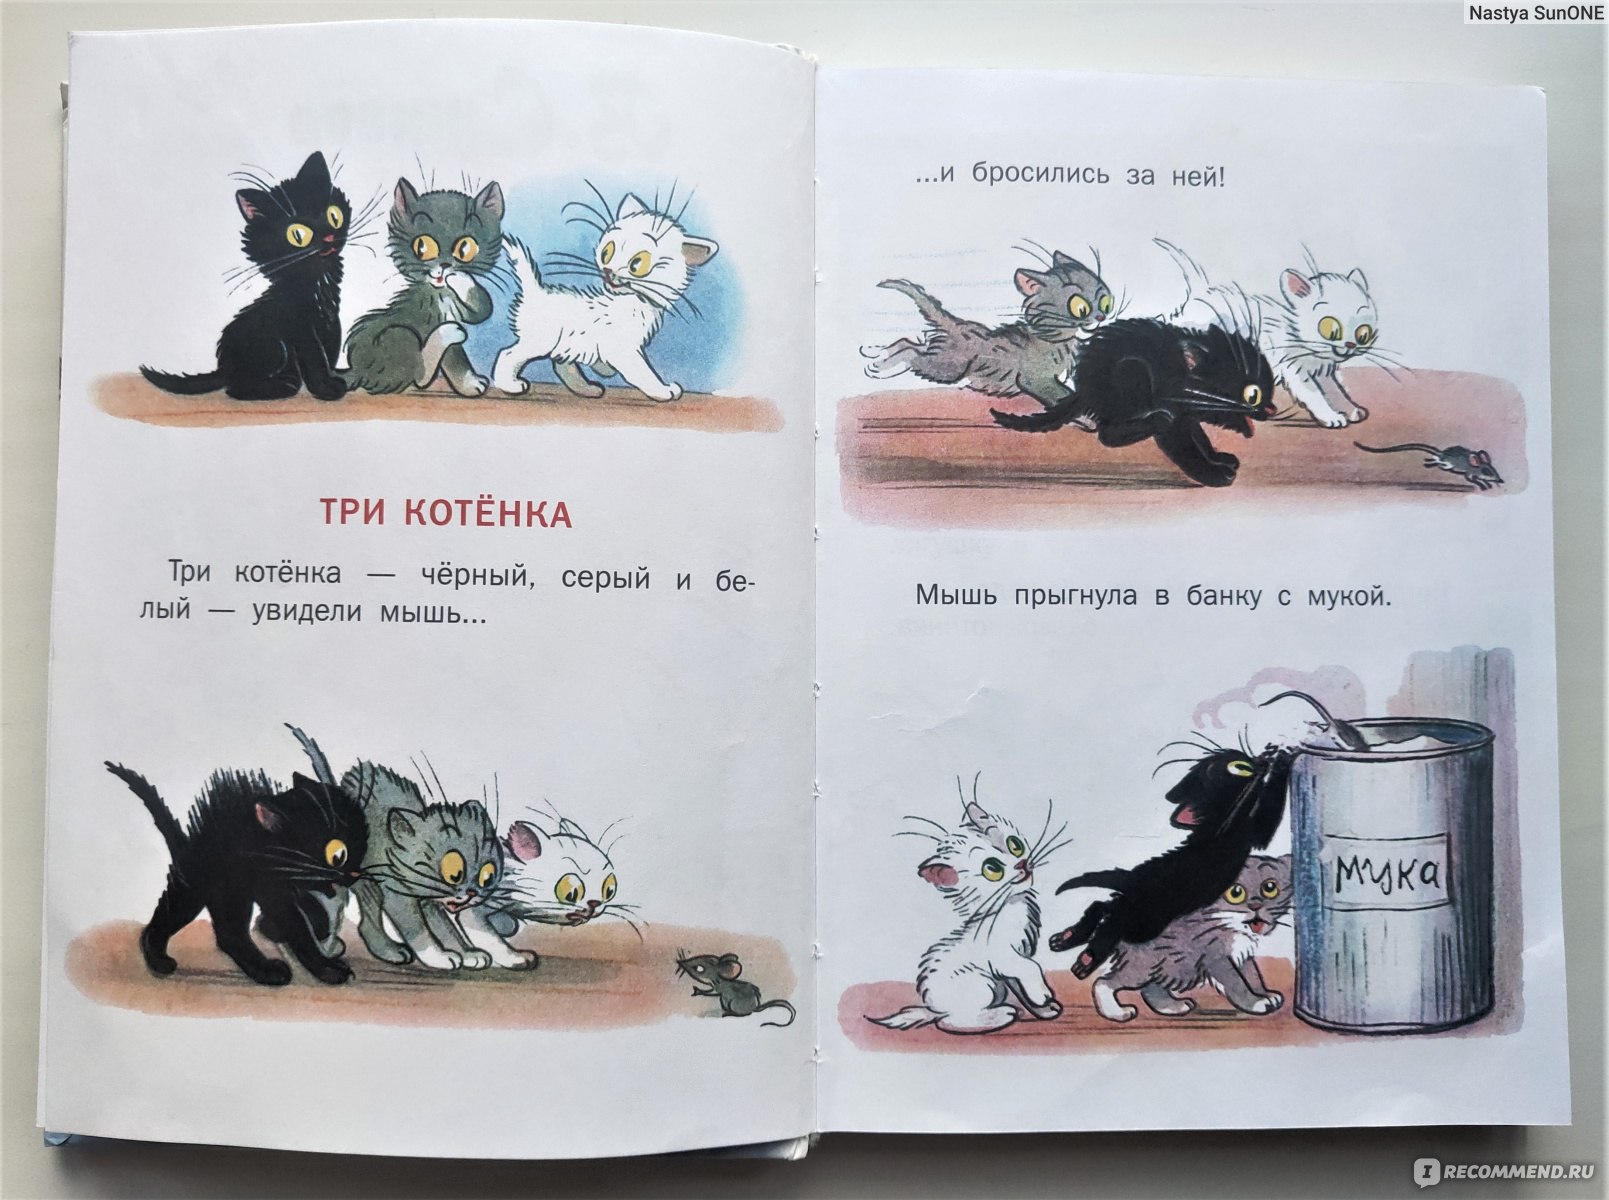 Читать рассказ котенок. Сутеев в. "три котенка". Три котенка читать. Три котёнка книга. Три кота Сутеев.